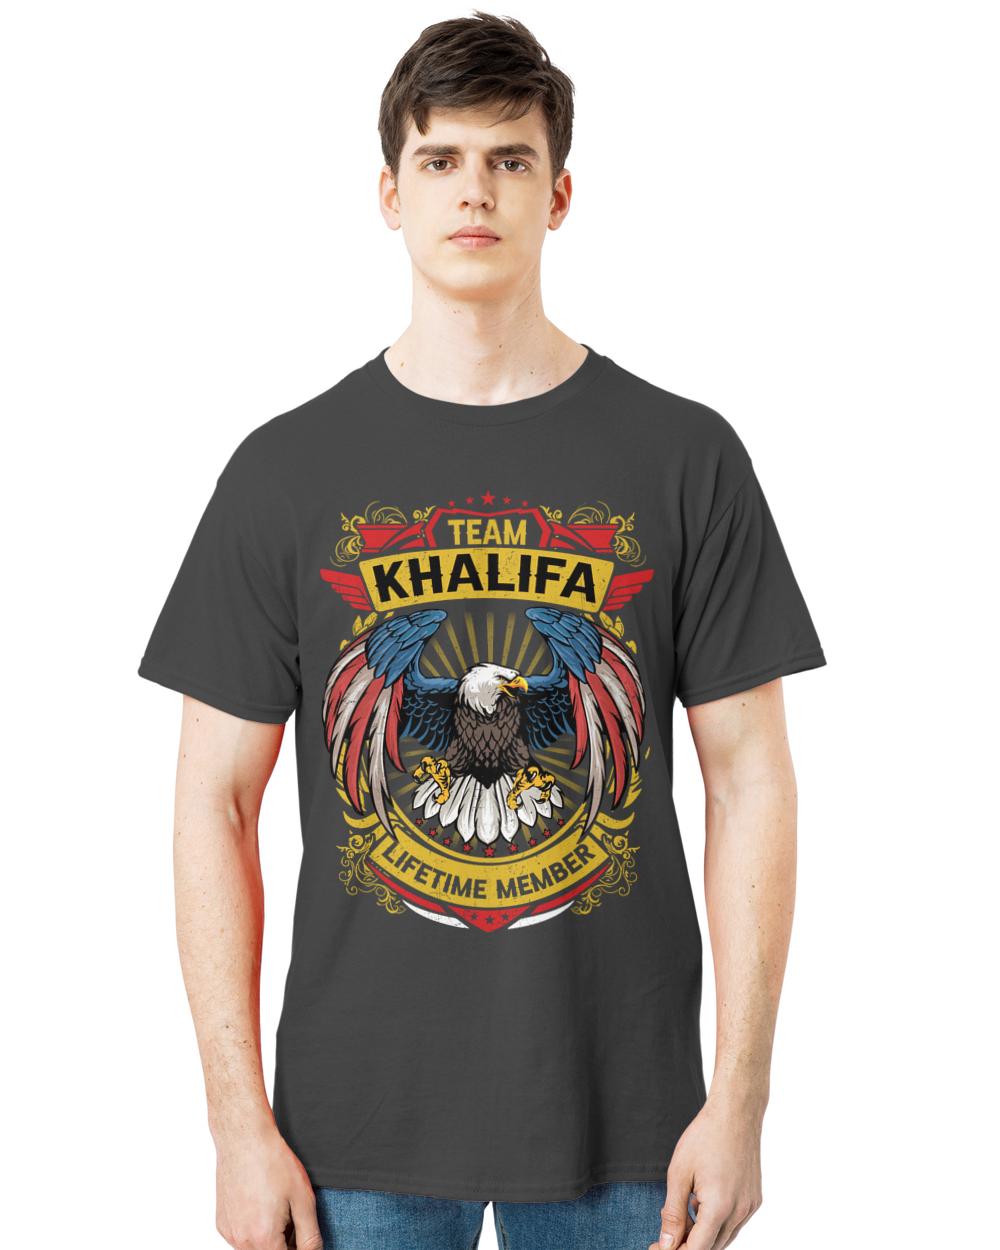 KHALIFA-13K-N3-01